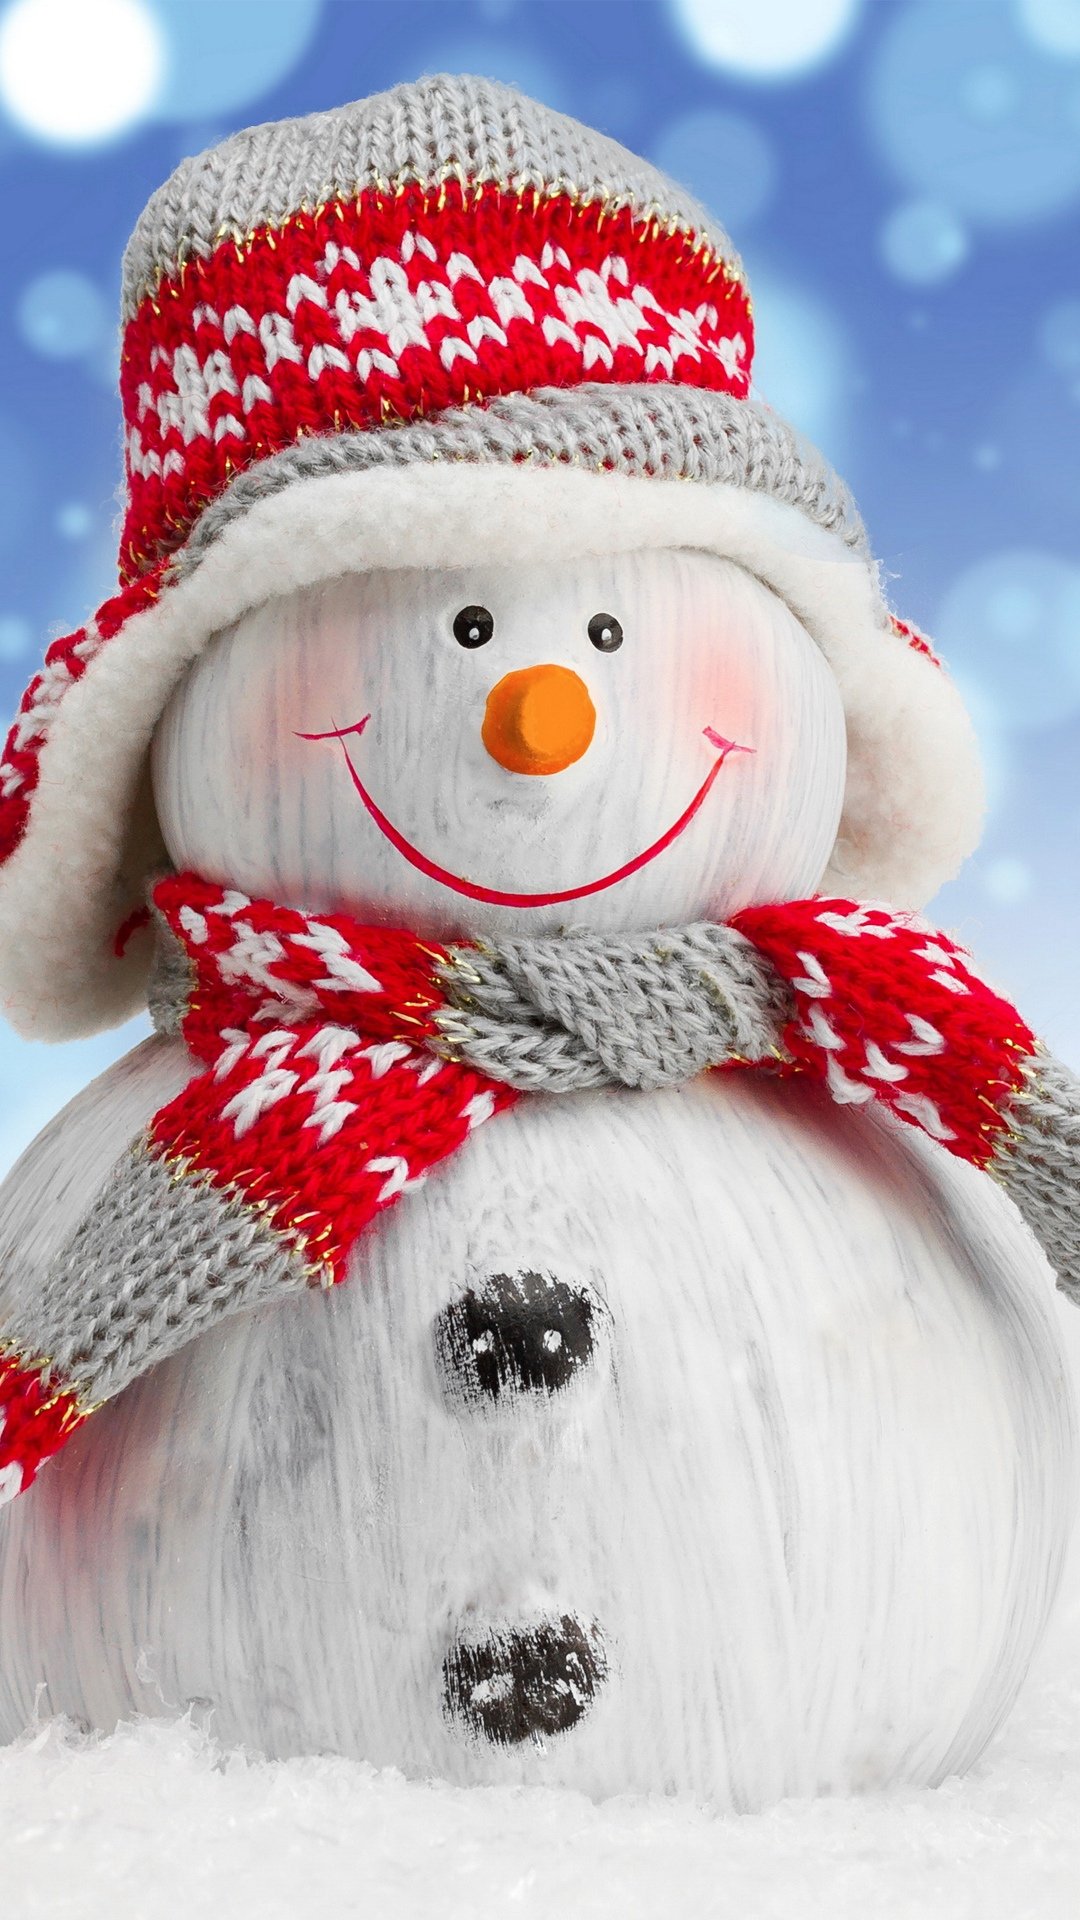 一组精美的戴围巾的小雪人,戴围巾,围巾,雪人,标签:可爱壁纸可爱圣诞